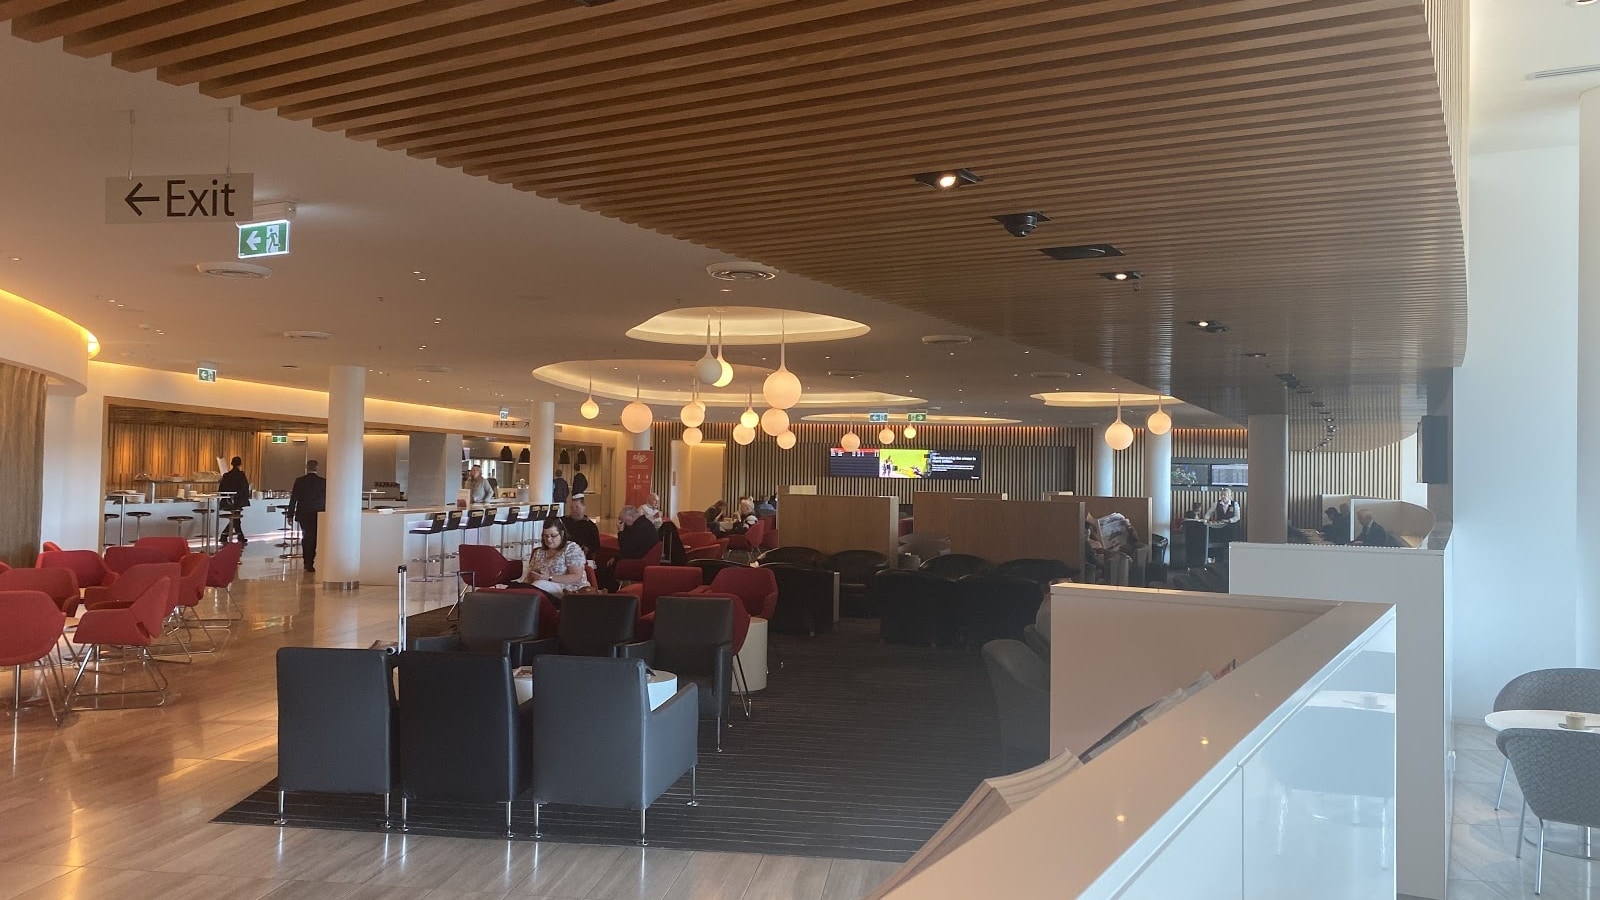 Qantas Club Canberra Lounge